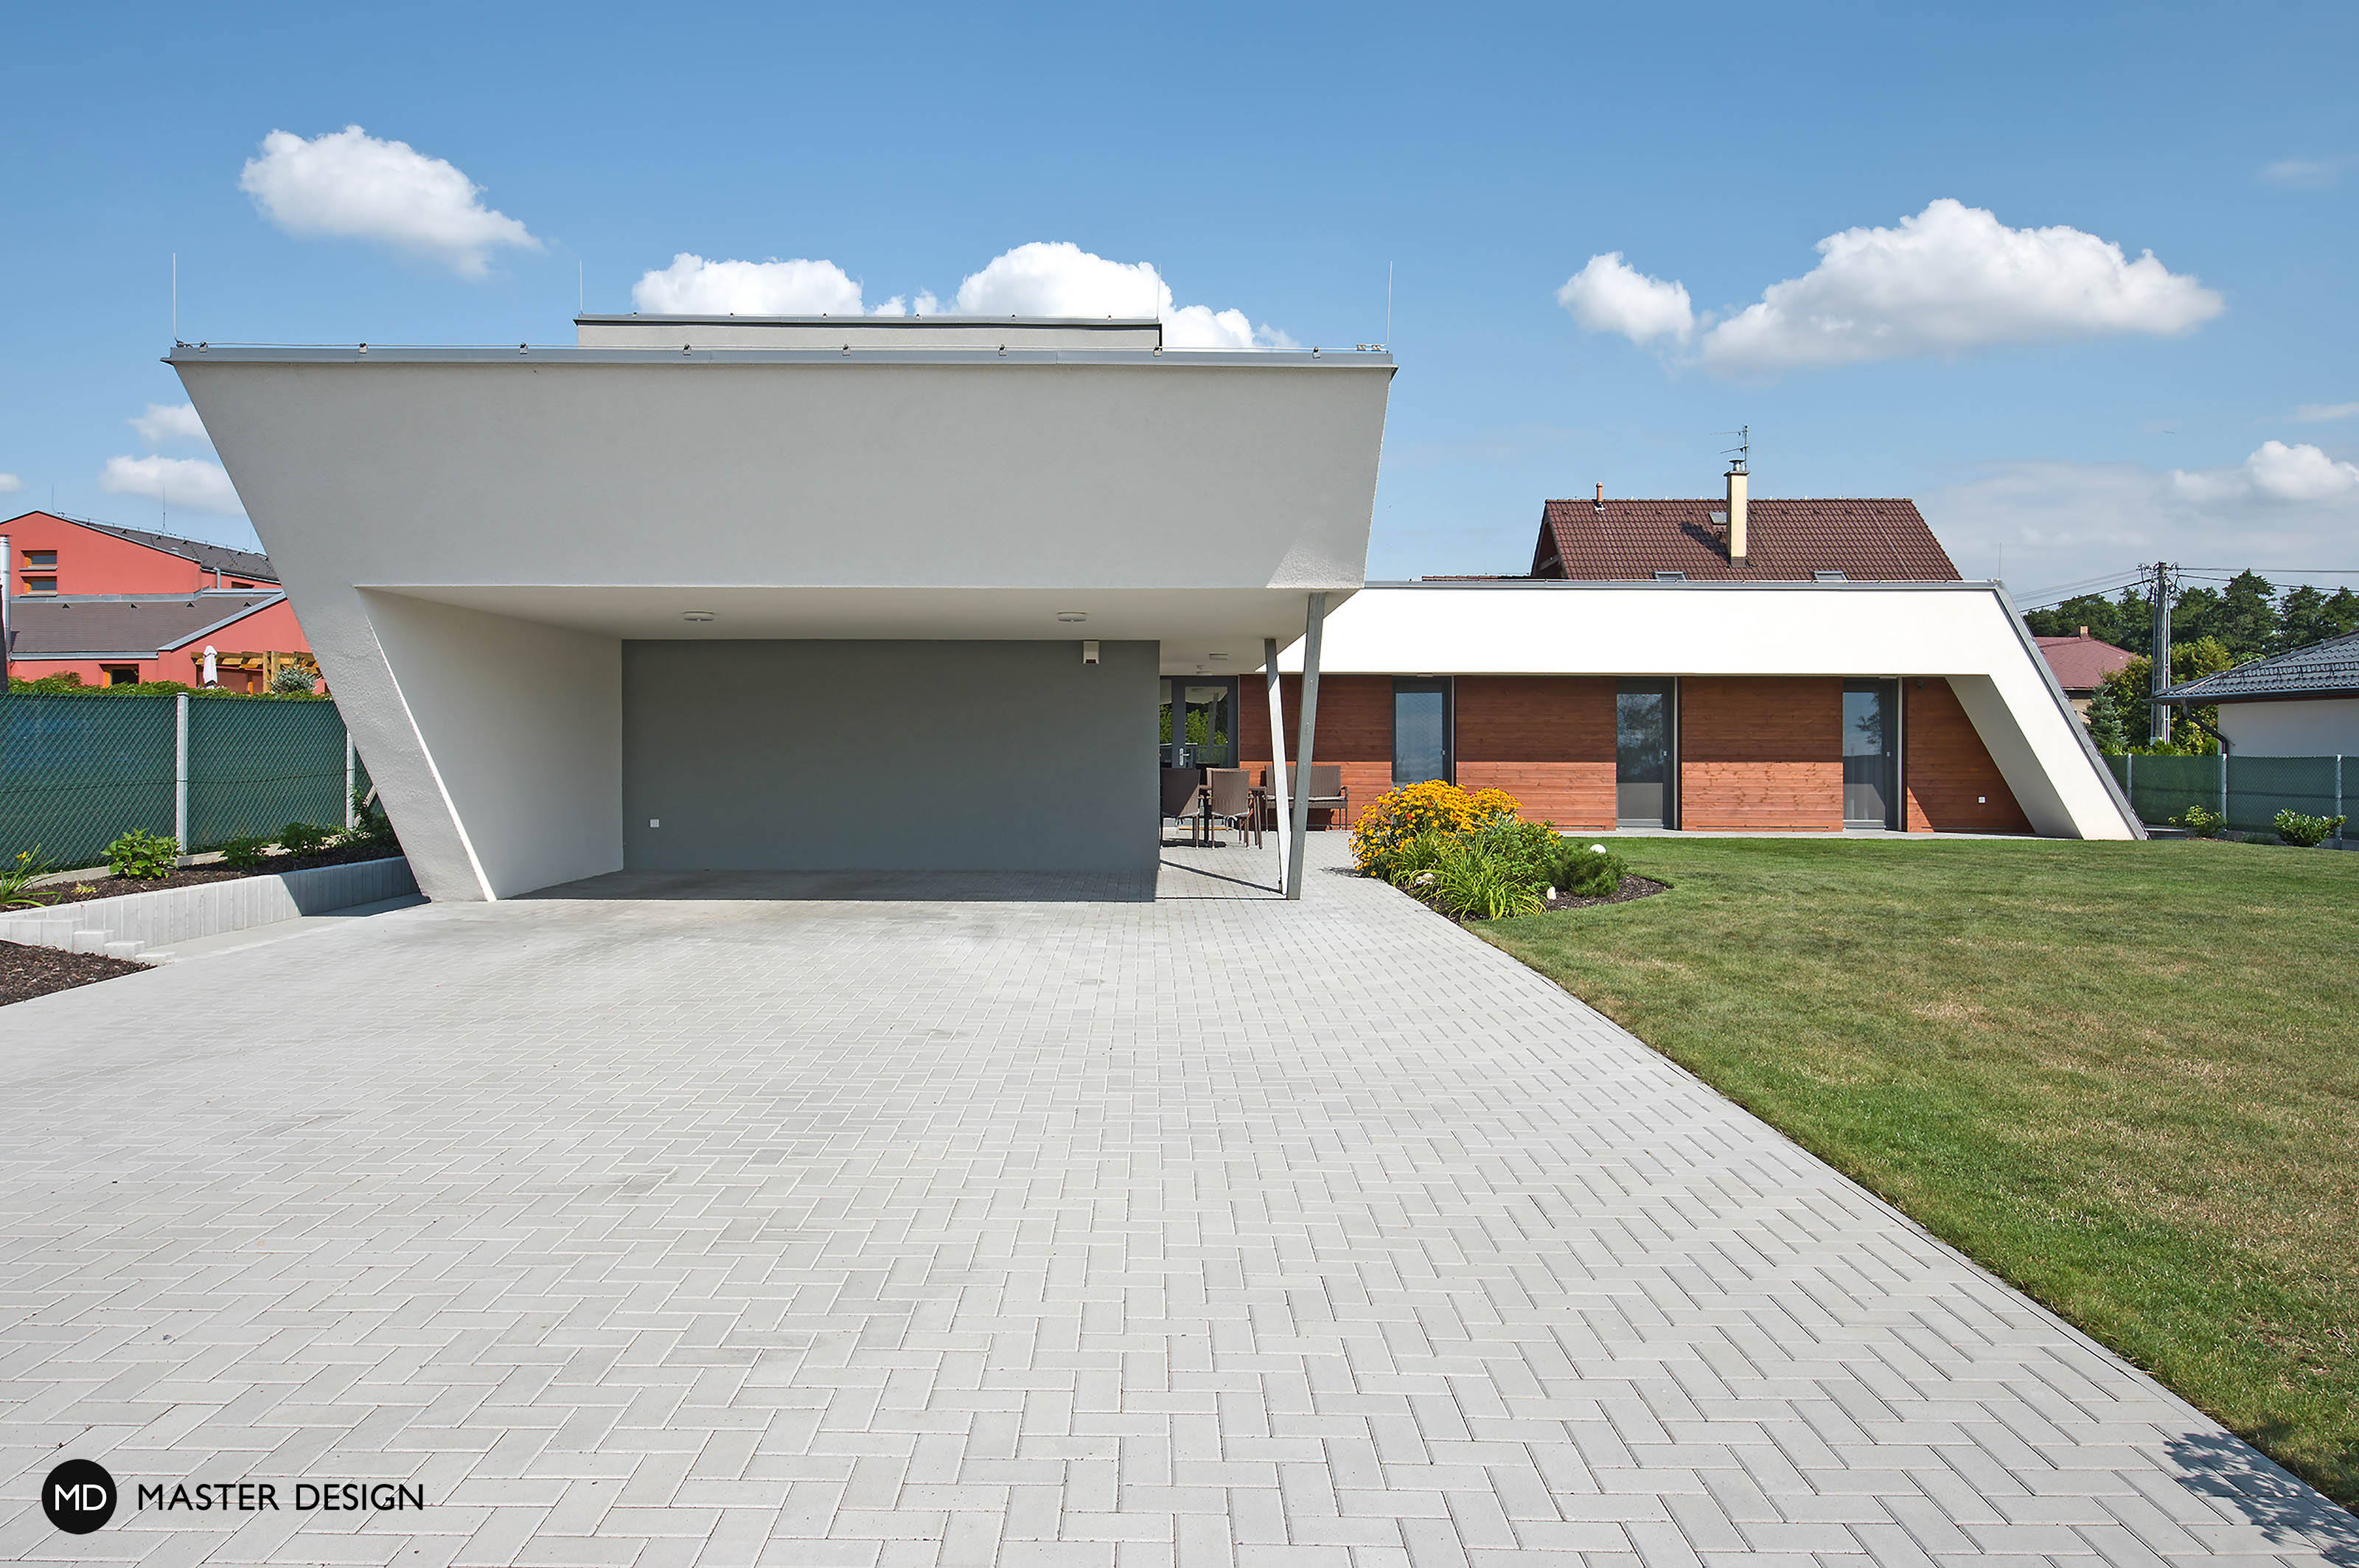 Atypický bungalov do L s plochou střechou, krytým stáním a dřevěným obkladem - Ostrava - Vizualizace 2